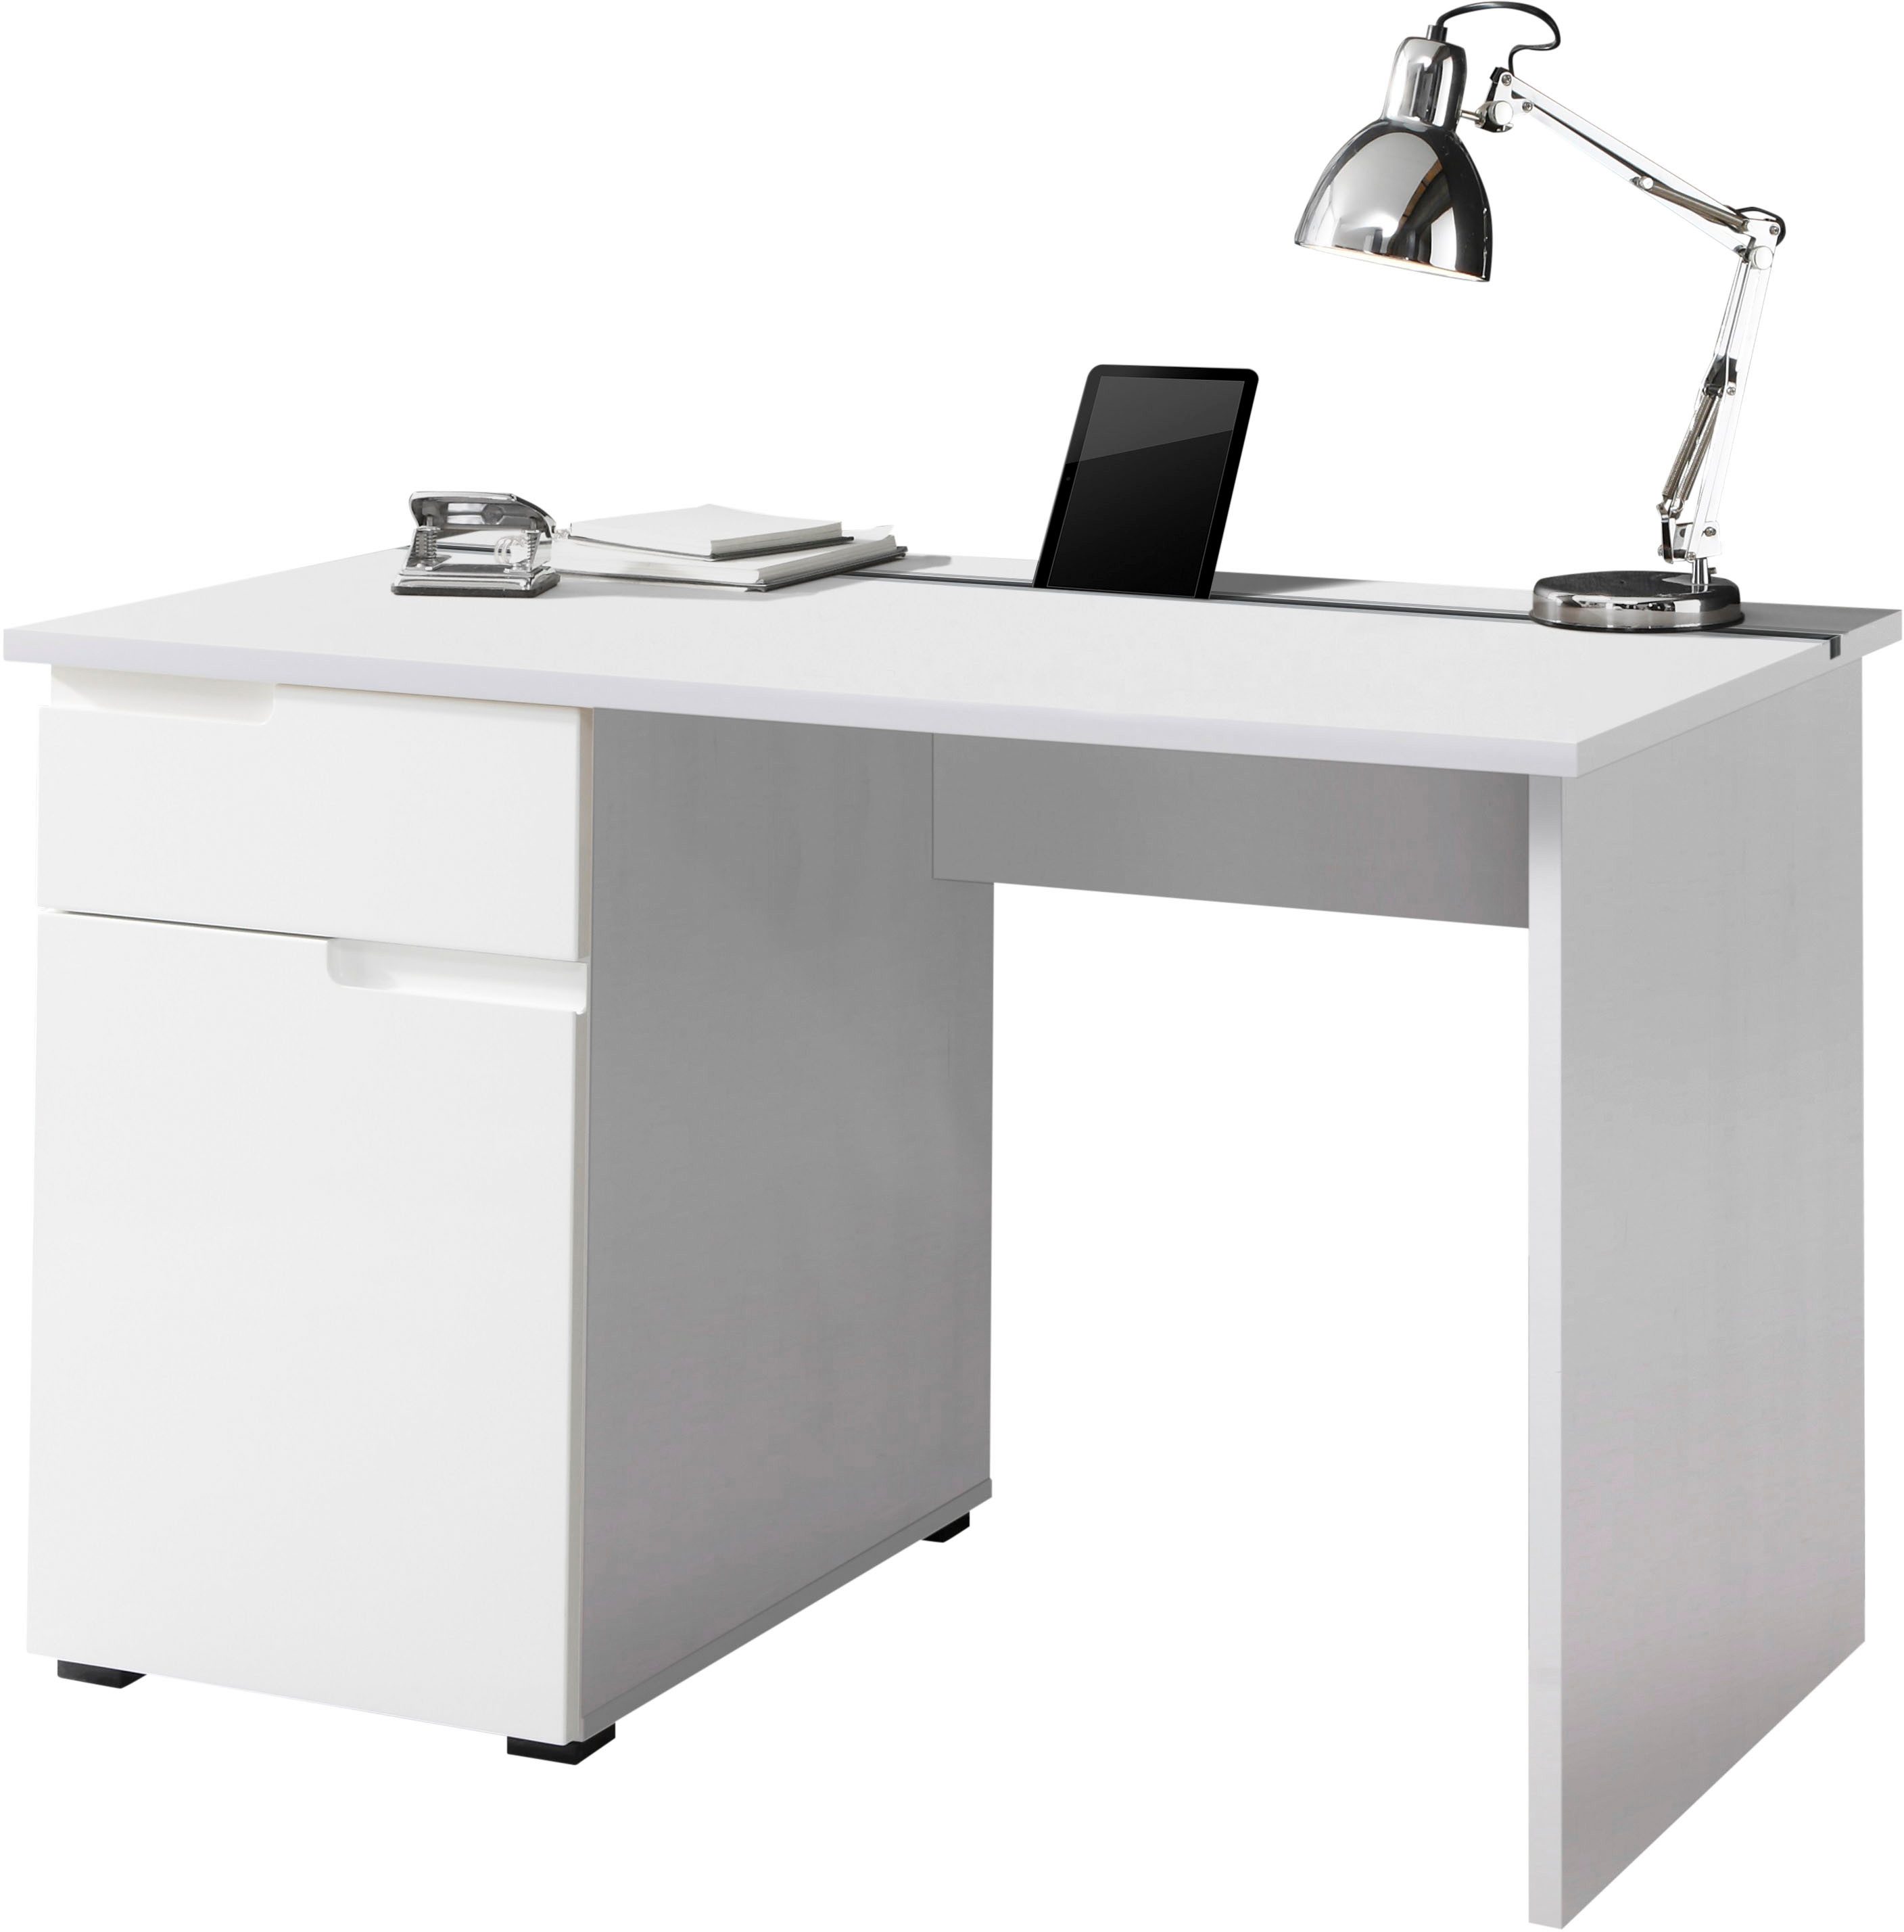 BEGA OFFICE Schreibtisch Spice, weiß hochglanz, Home Office Desk mit Schubkästen